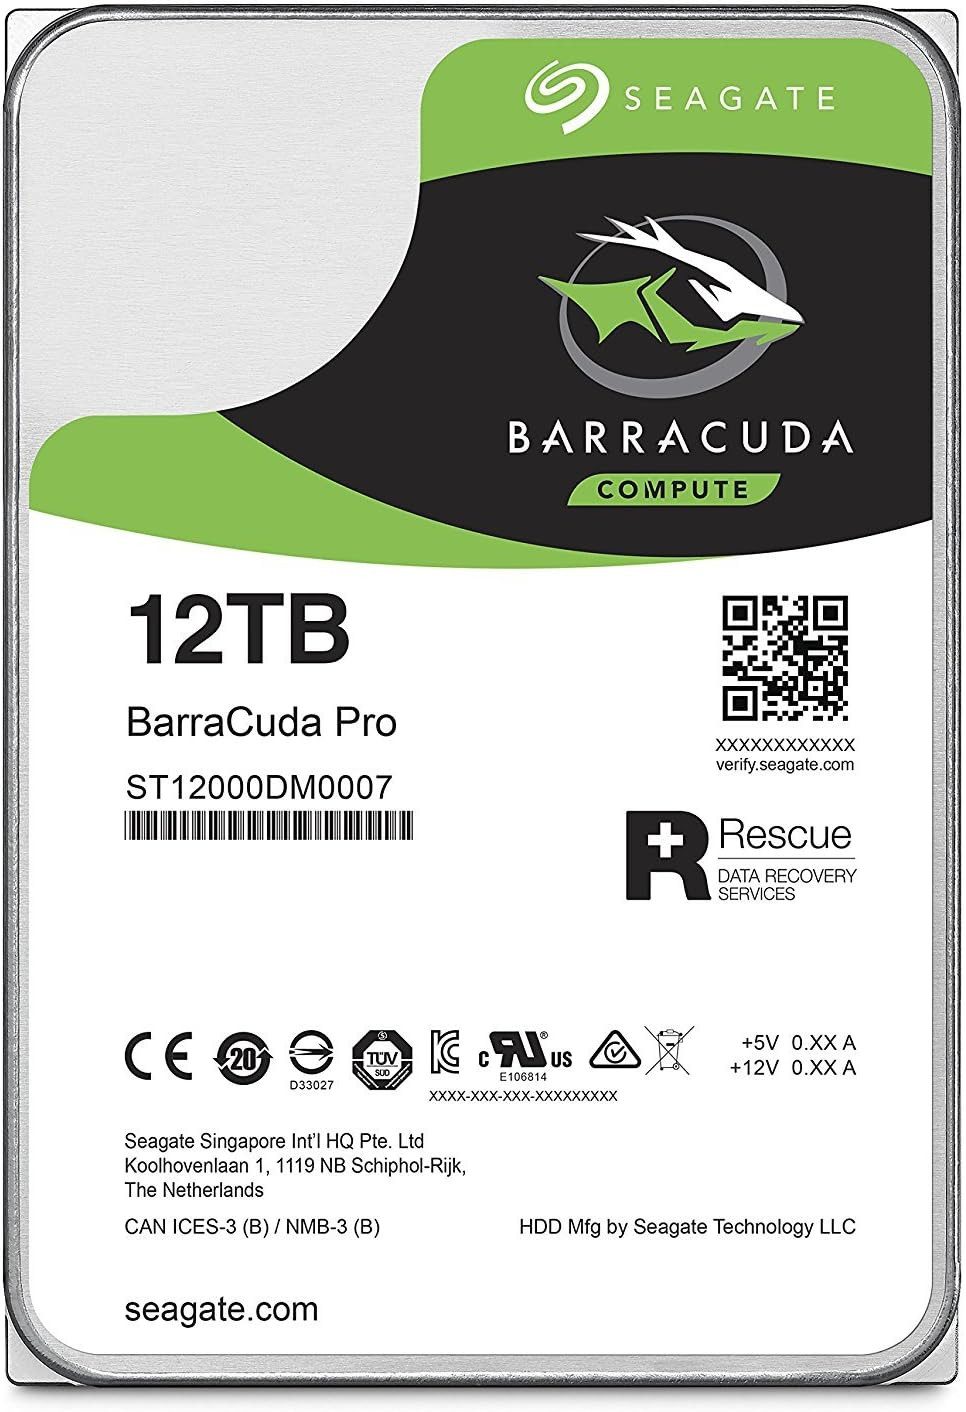 Seagate Barracuda Pro 12TB HDD ST12000DM0007 3,5 Zoll SATA3 interne HDD-Festplatte